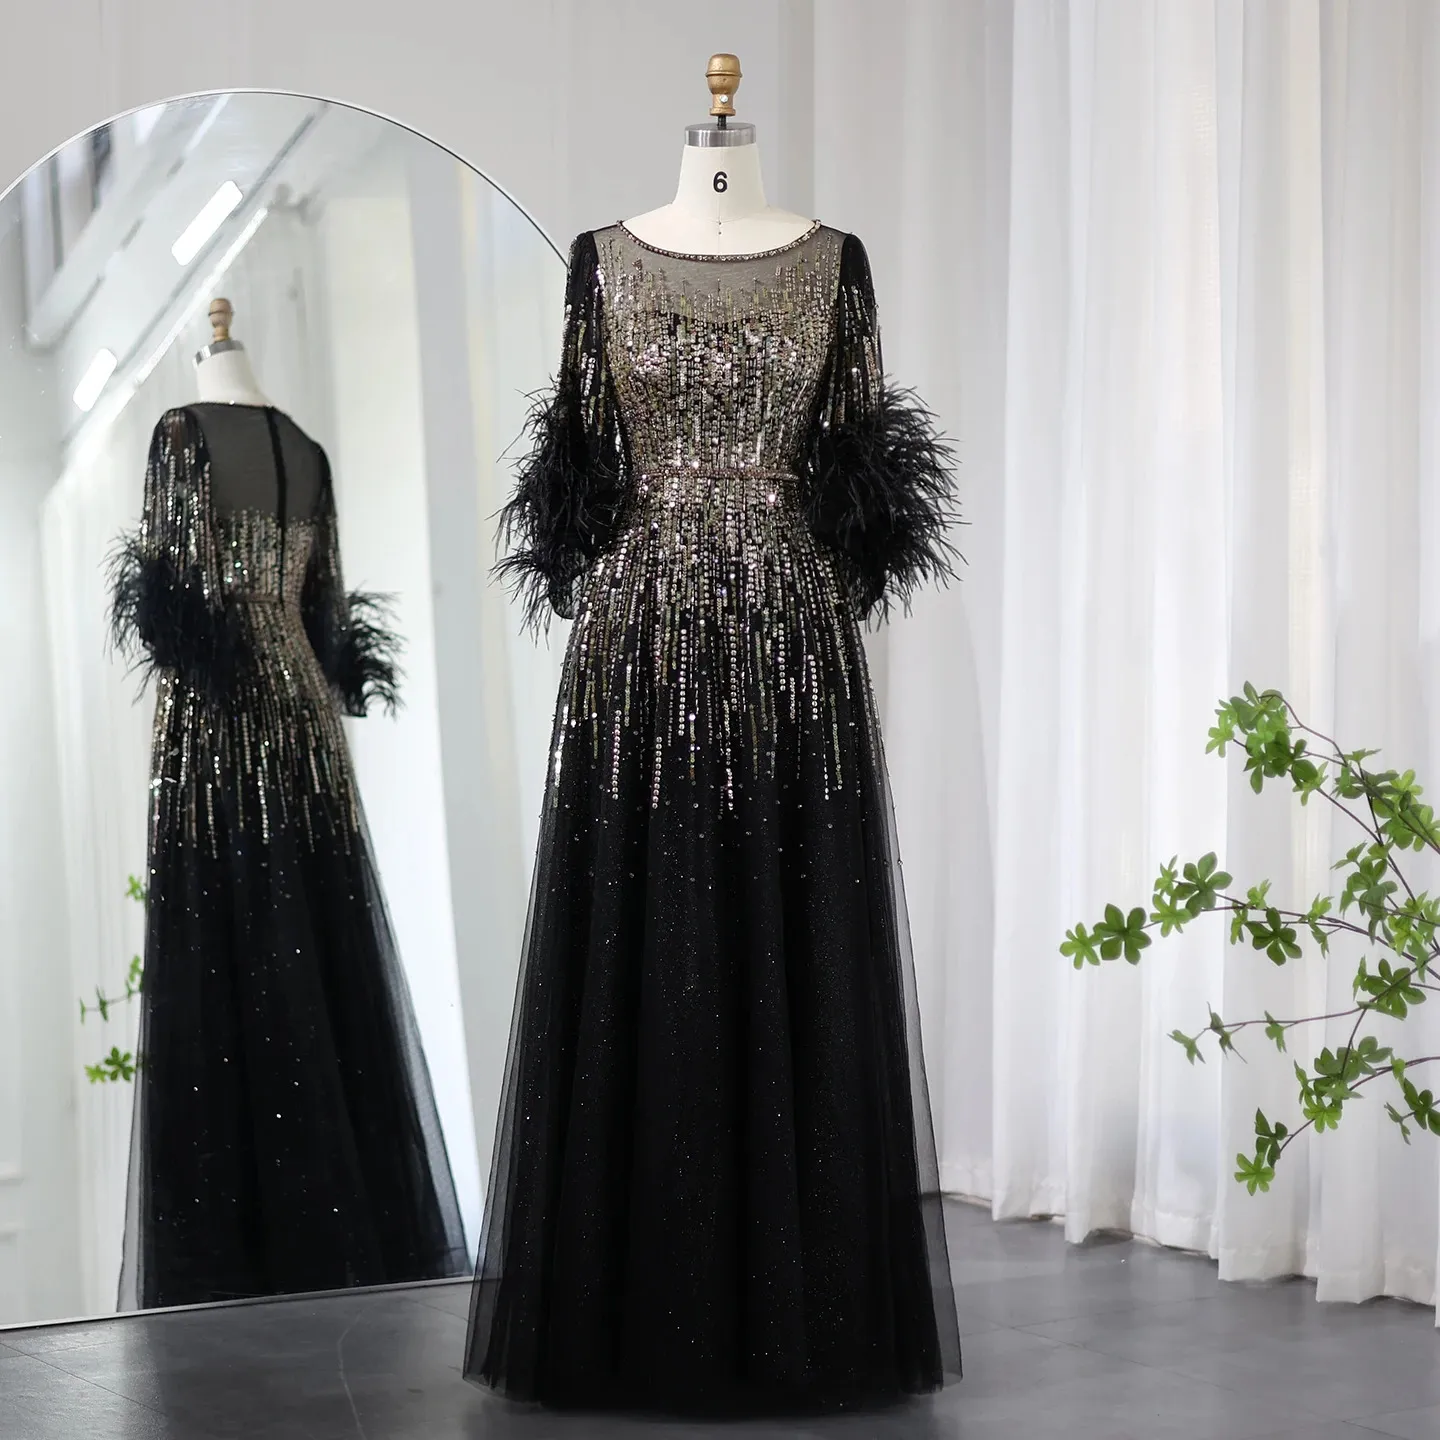 Sharon Said Plumes de luxe noir Dubaï robes de soirée pour les femmes élégant Fuchsia arabe demi manches robe de soirée de mariage SS339 240201